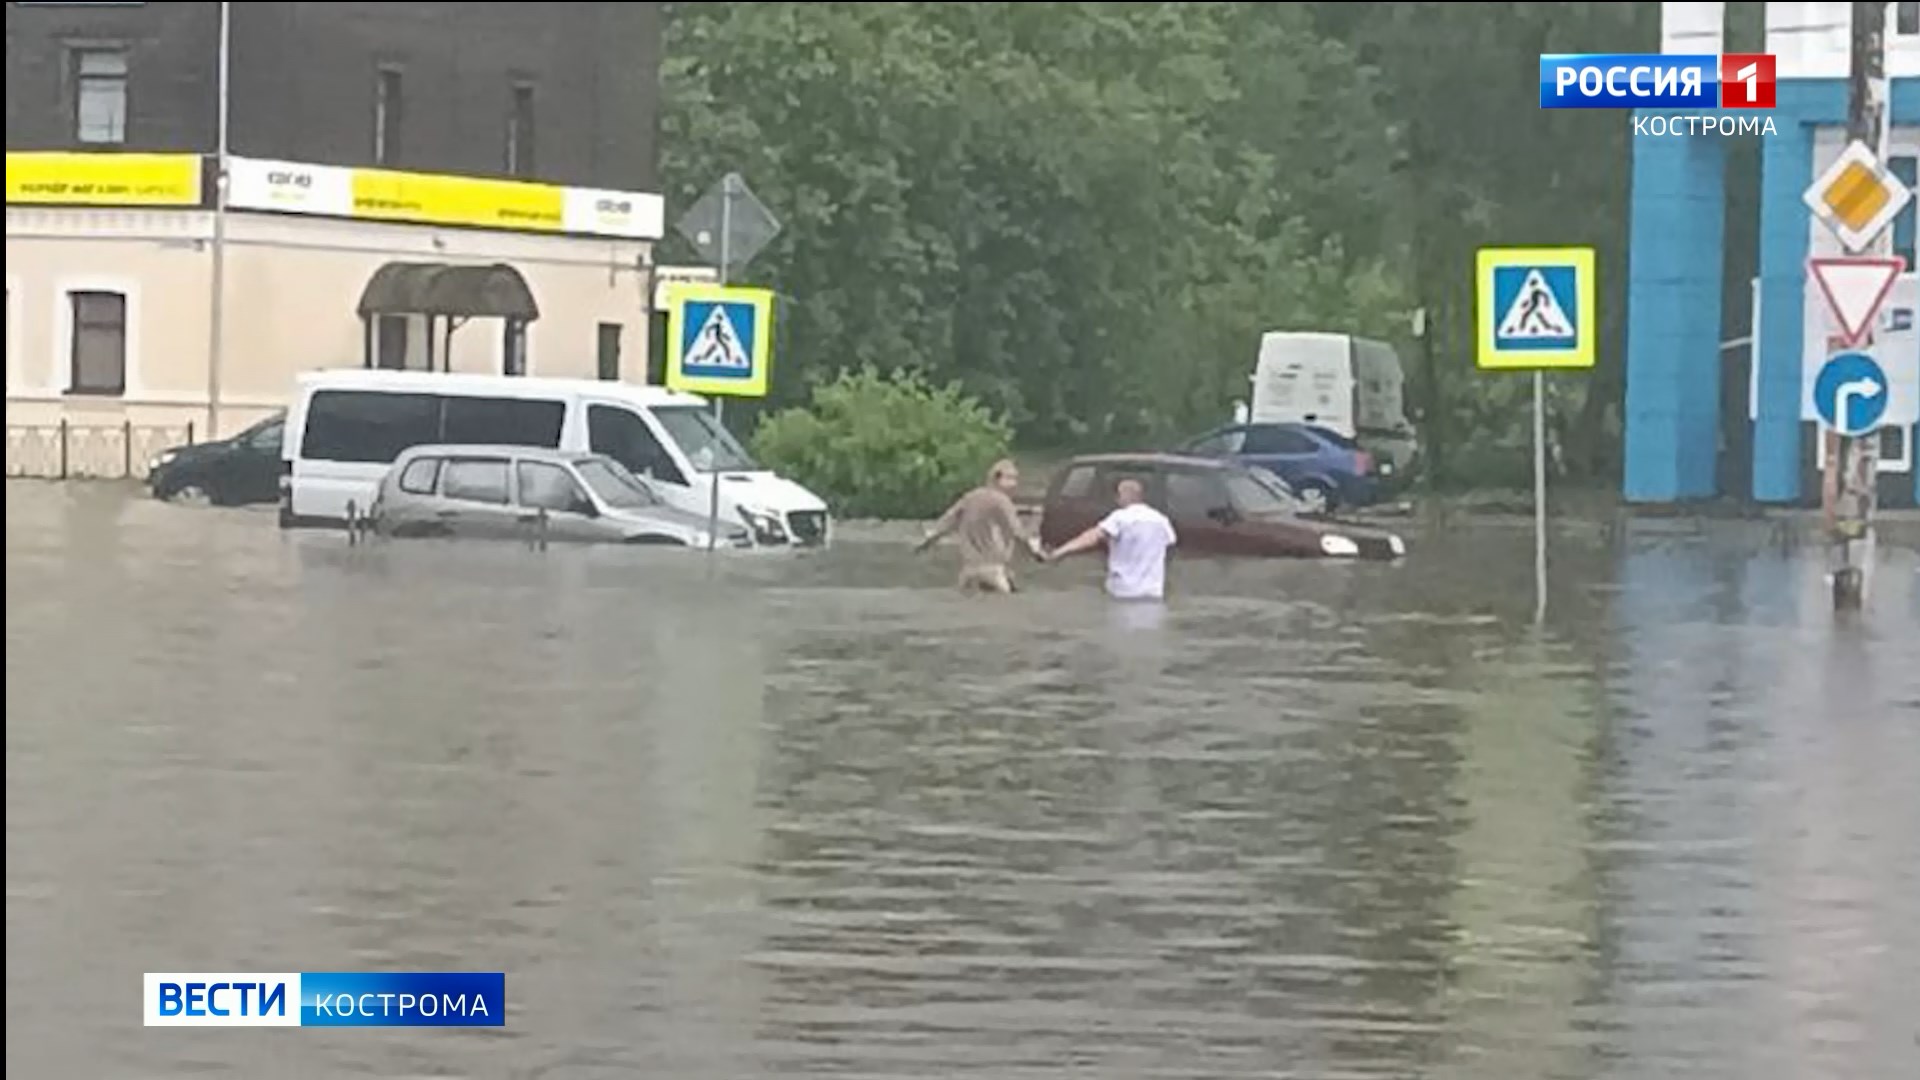 Обрушившаяся непогода хорошенько подтопила сразу несколько улиц в Костроме